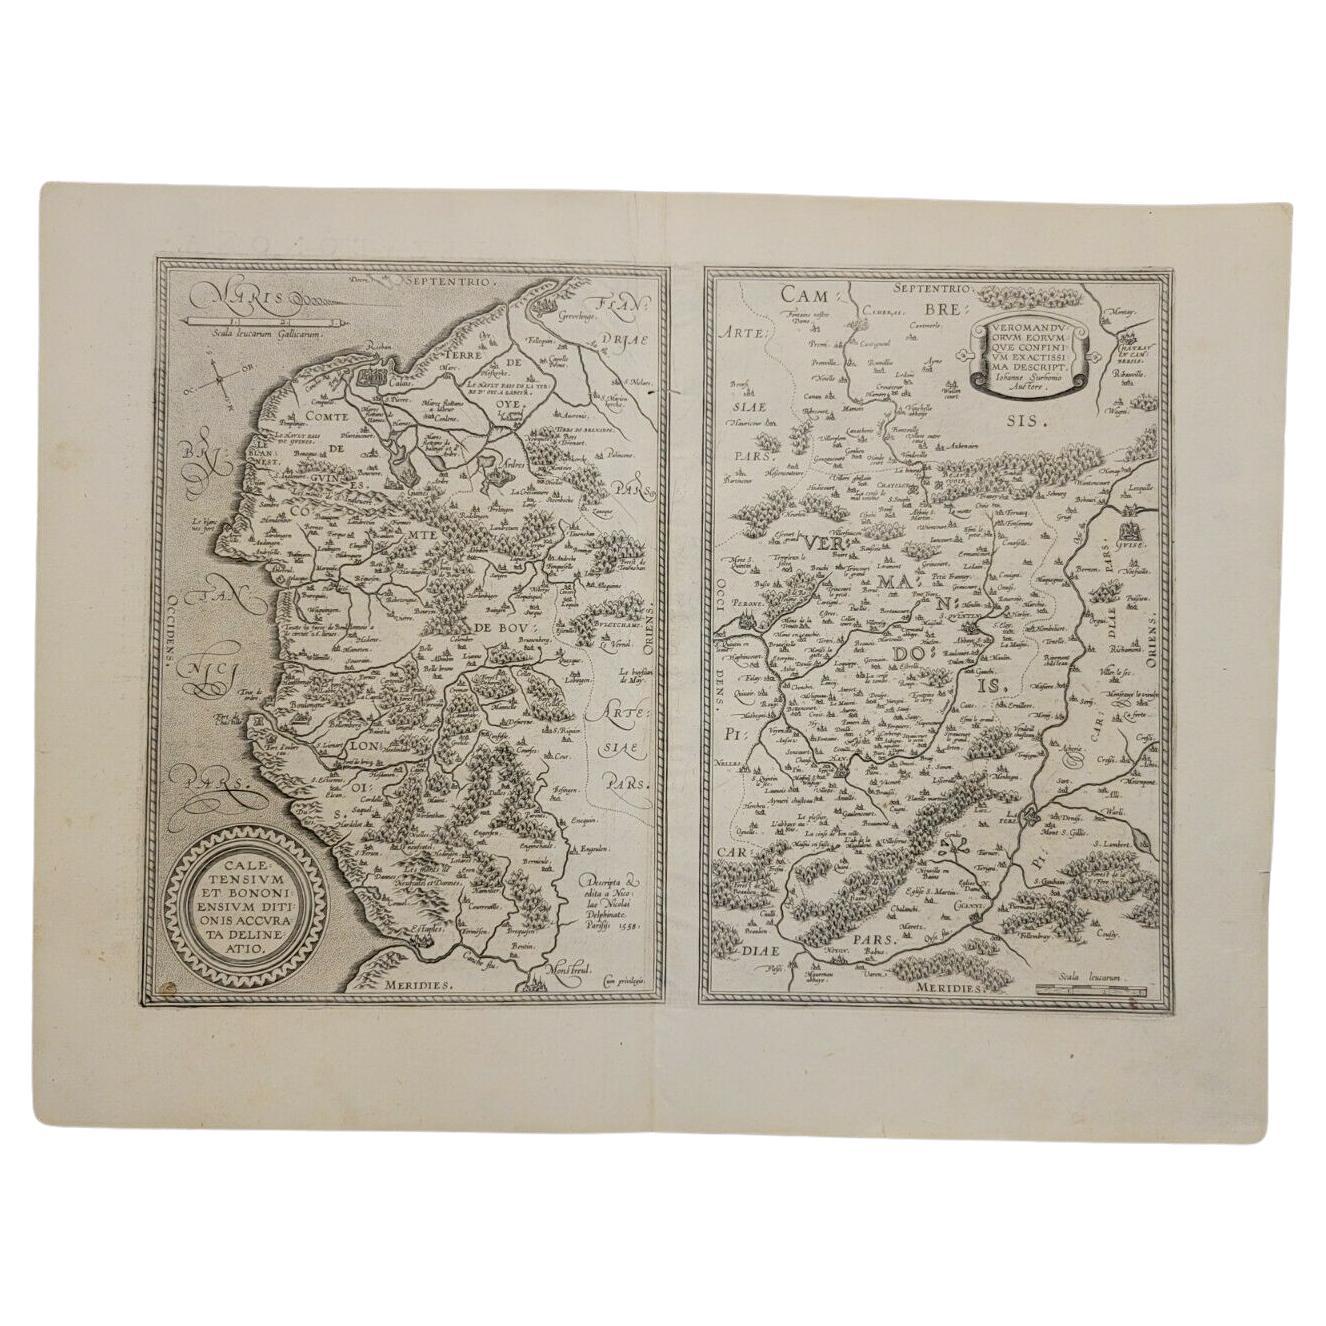 Ortelius-Karte von Calais und Vermandois, Frankreich, aus dem Jahr 1590 und Vicinity Ric.a014